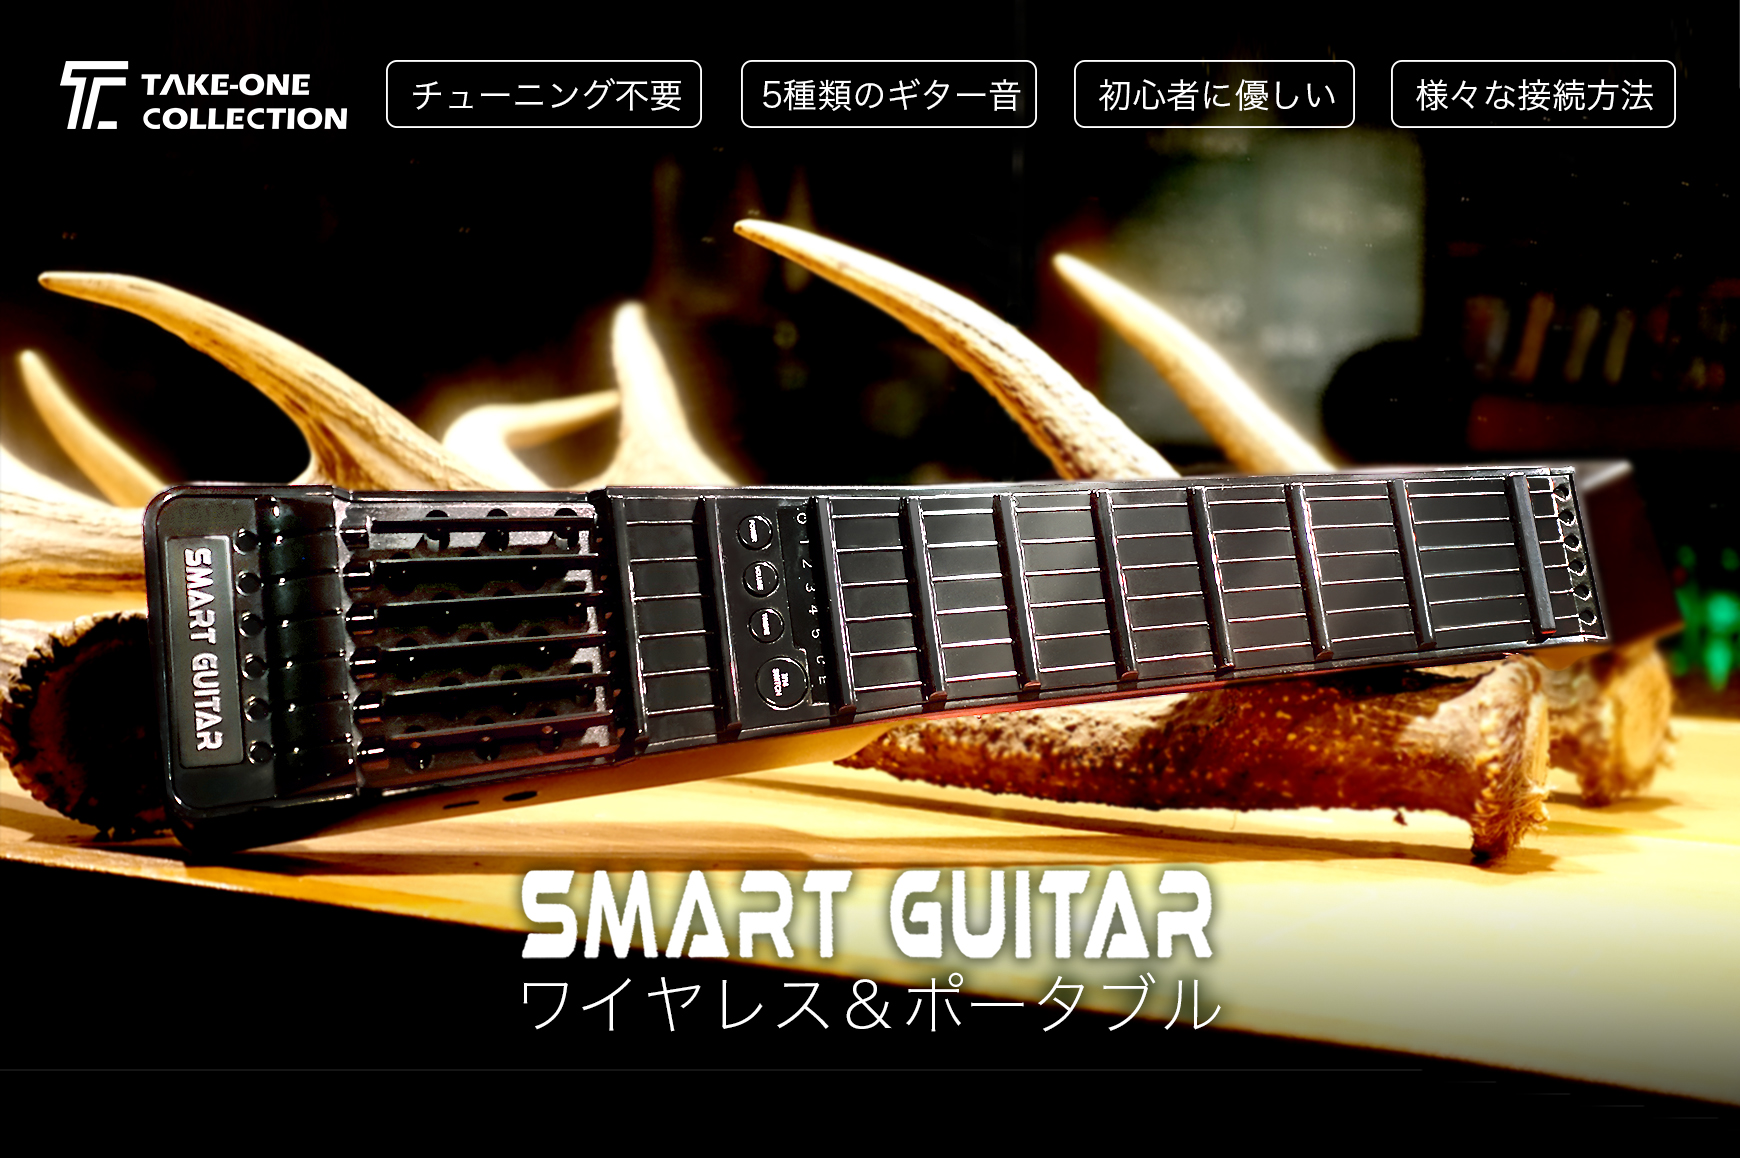 弦の代わりにスマートパネル採用 誰でも演奏できるギターデバイス Smartguitar Engadget 日本版